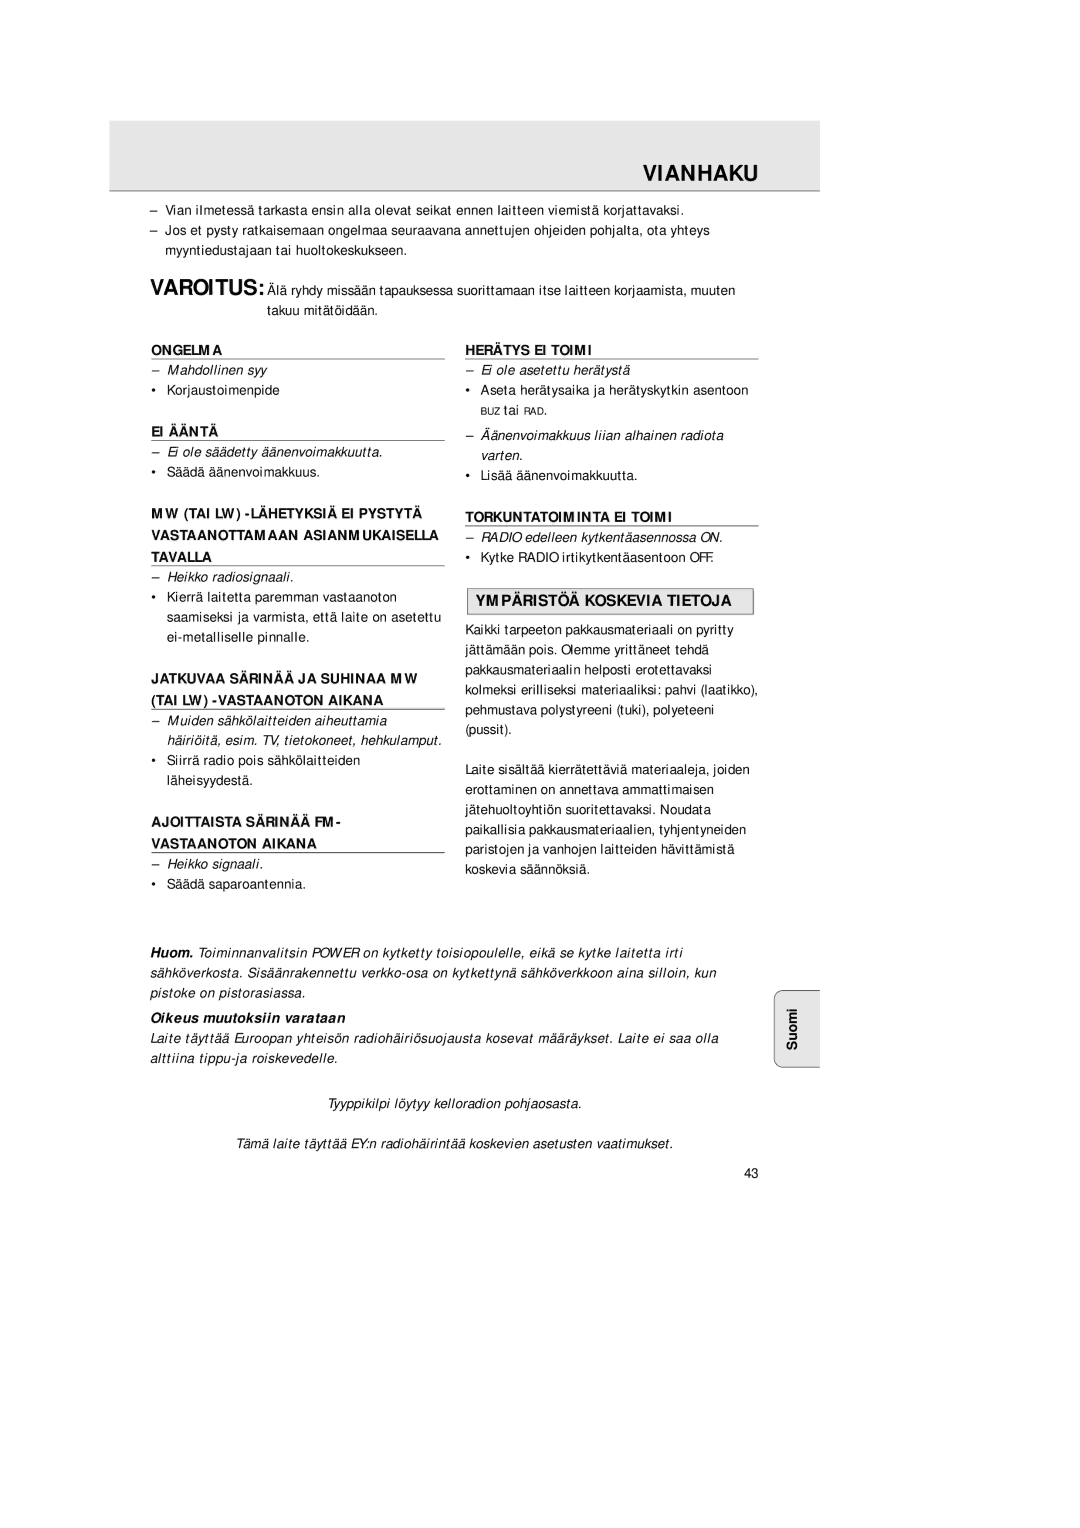 Philips AJ 3380 manual Vianhaku, Ympäristöä Koskevia Tietoja, Oikeus muutoksiin varataan 